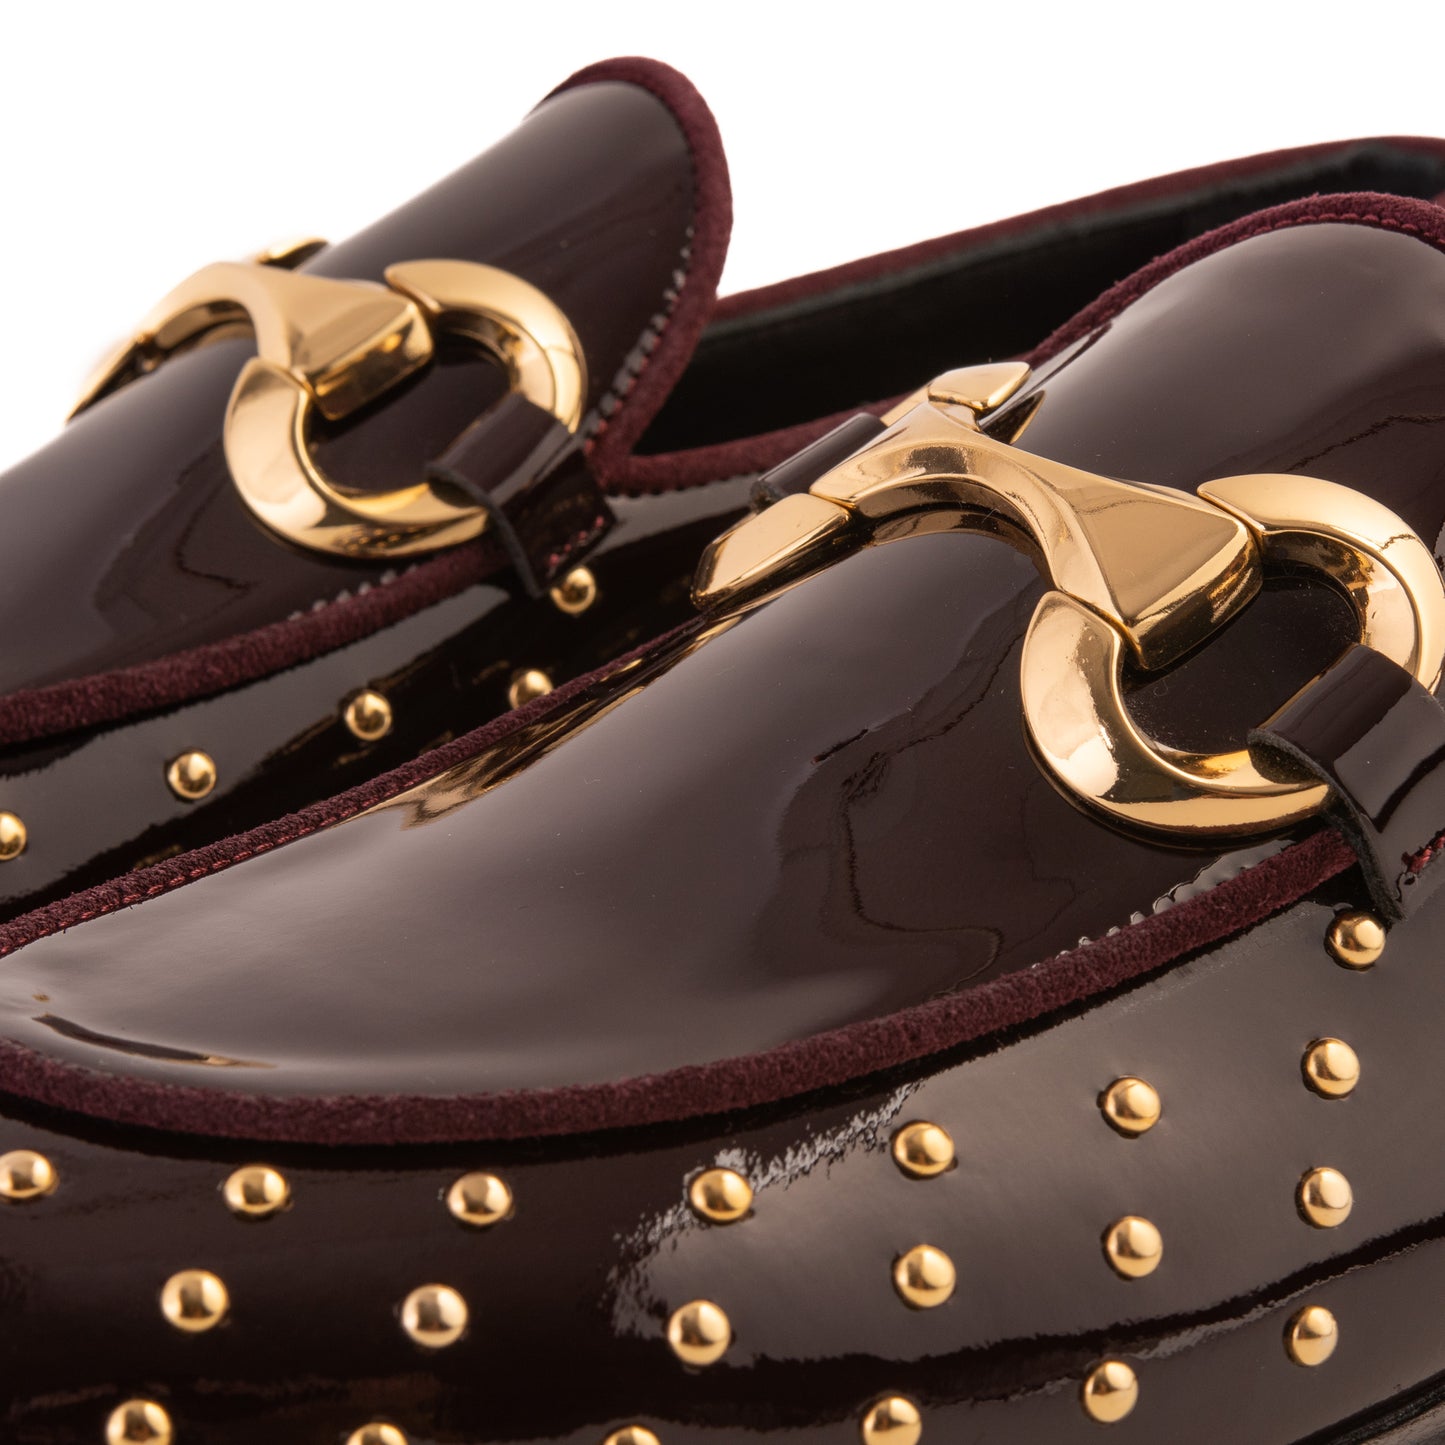 The Jupiter  Shoe Burgundy Spike Leather  Bit Dress Loafer Limited Edition Men Shoe